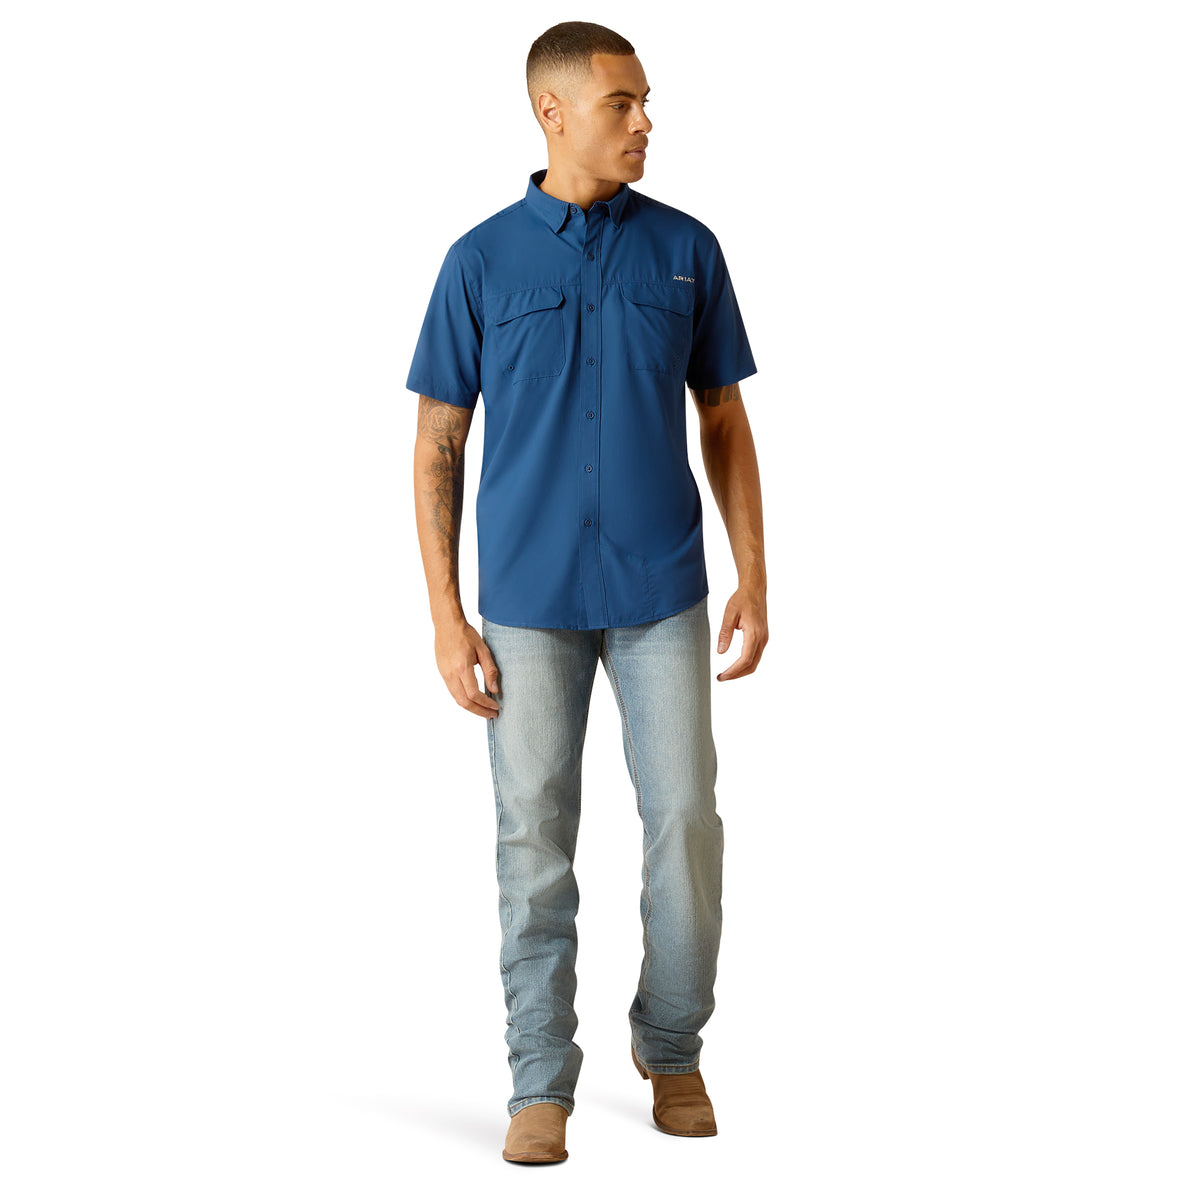 Men's Ariat VentTEK Outbound Fitted Shirt - 10049016 Medium